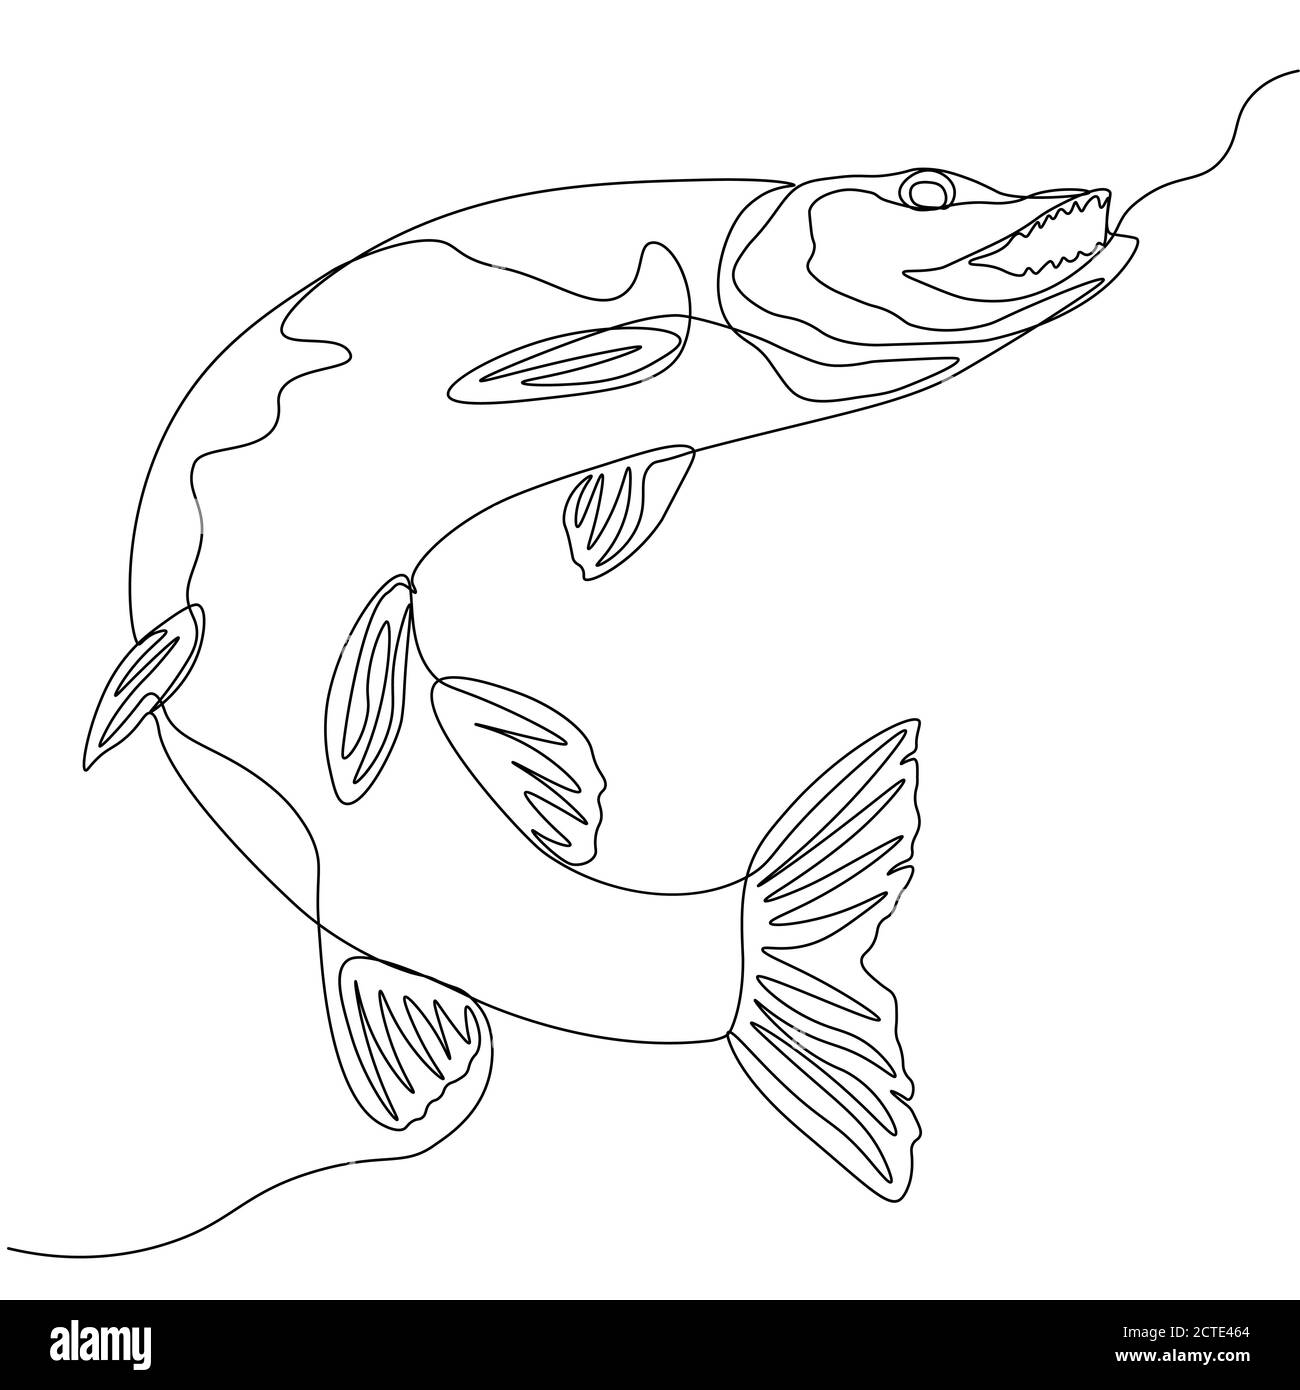 Hecht. Eine Linie Fisch-Design Silhouette. Logo-Design. Handgezeichnete Vektorgrafik im Minimalismus-Stil... Stock Vektor